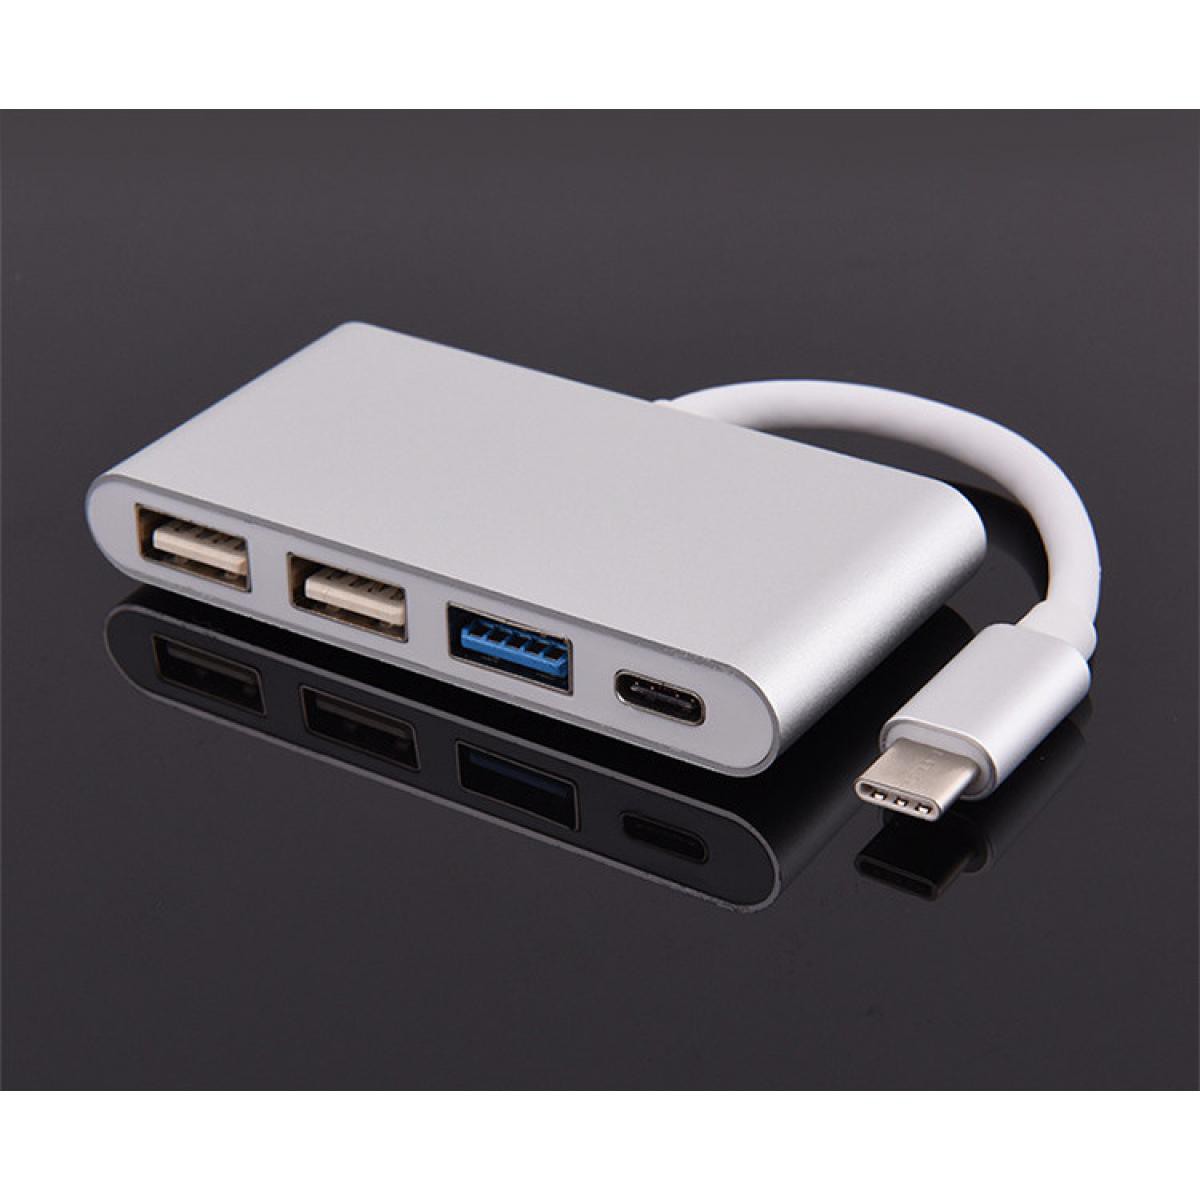 Shot - Multi Adaptateur 4 en 1 Type C pour LeEco Le 1s Smartphone Hub 2 ports USB 2.0 1 Port USB 3.0 (ARGENT) - Hub